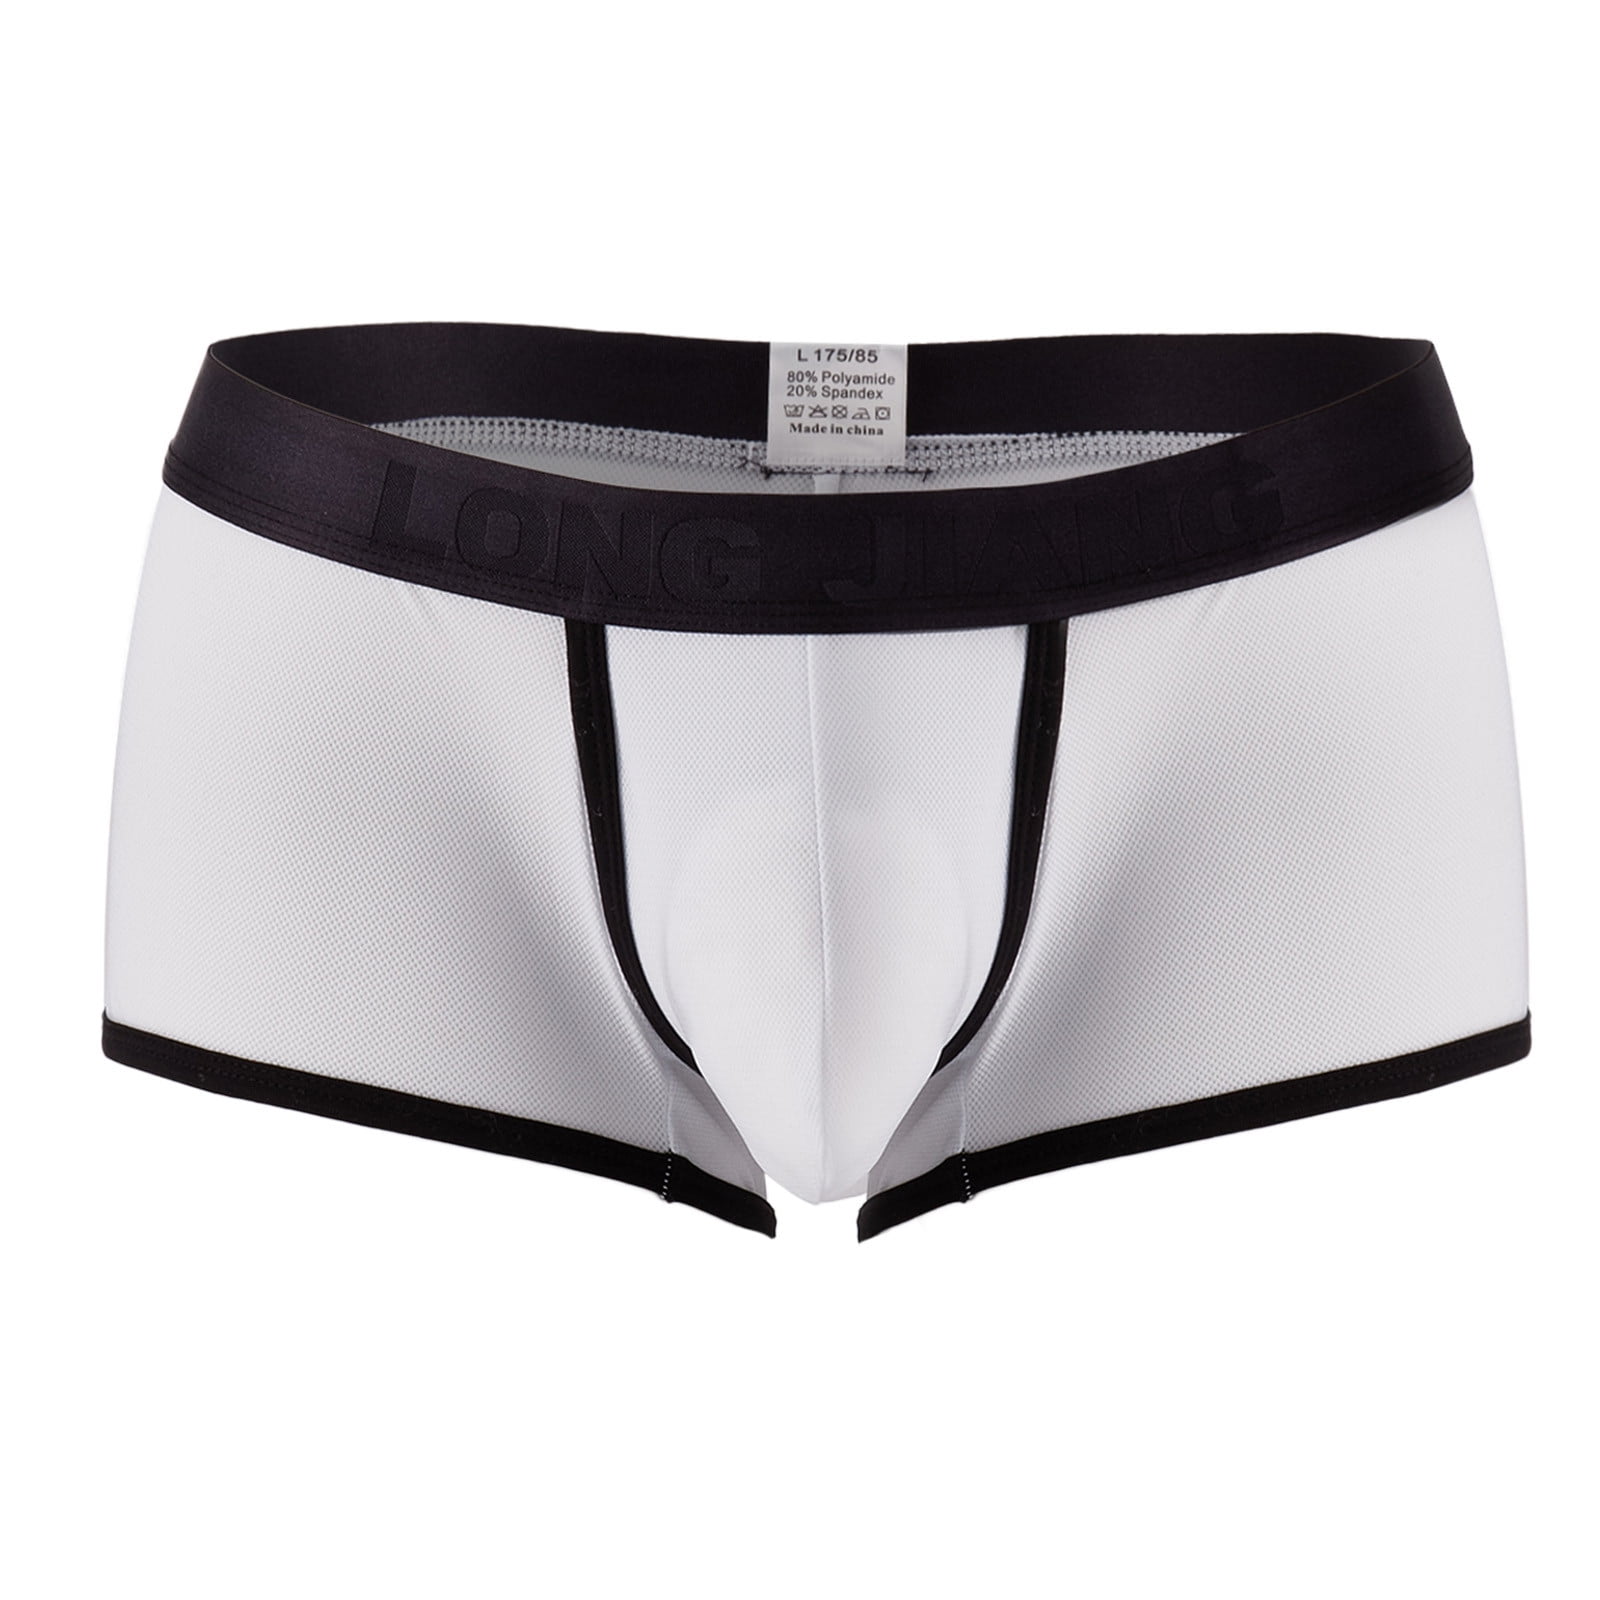 Zuwimk Men Underwear,Men's Transprant Thong Underwear Low Rise See ...